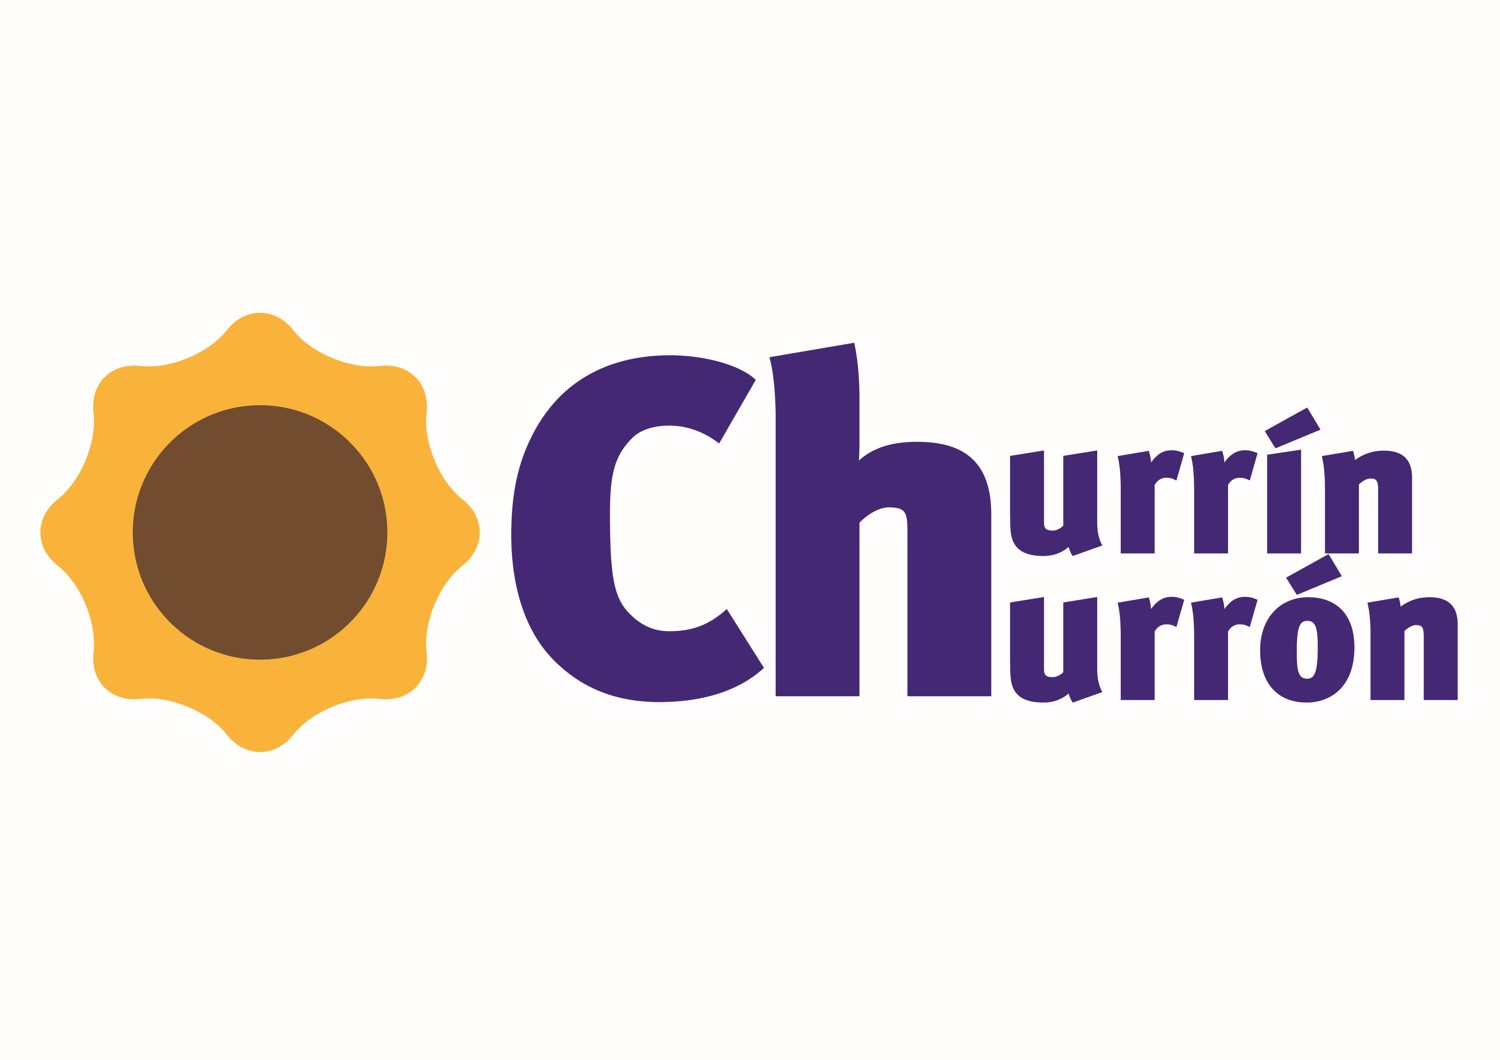 Auditoría CHURRIN  CHURRON -TIENDAS